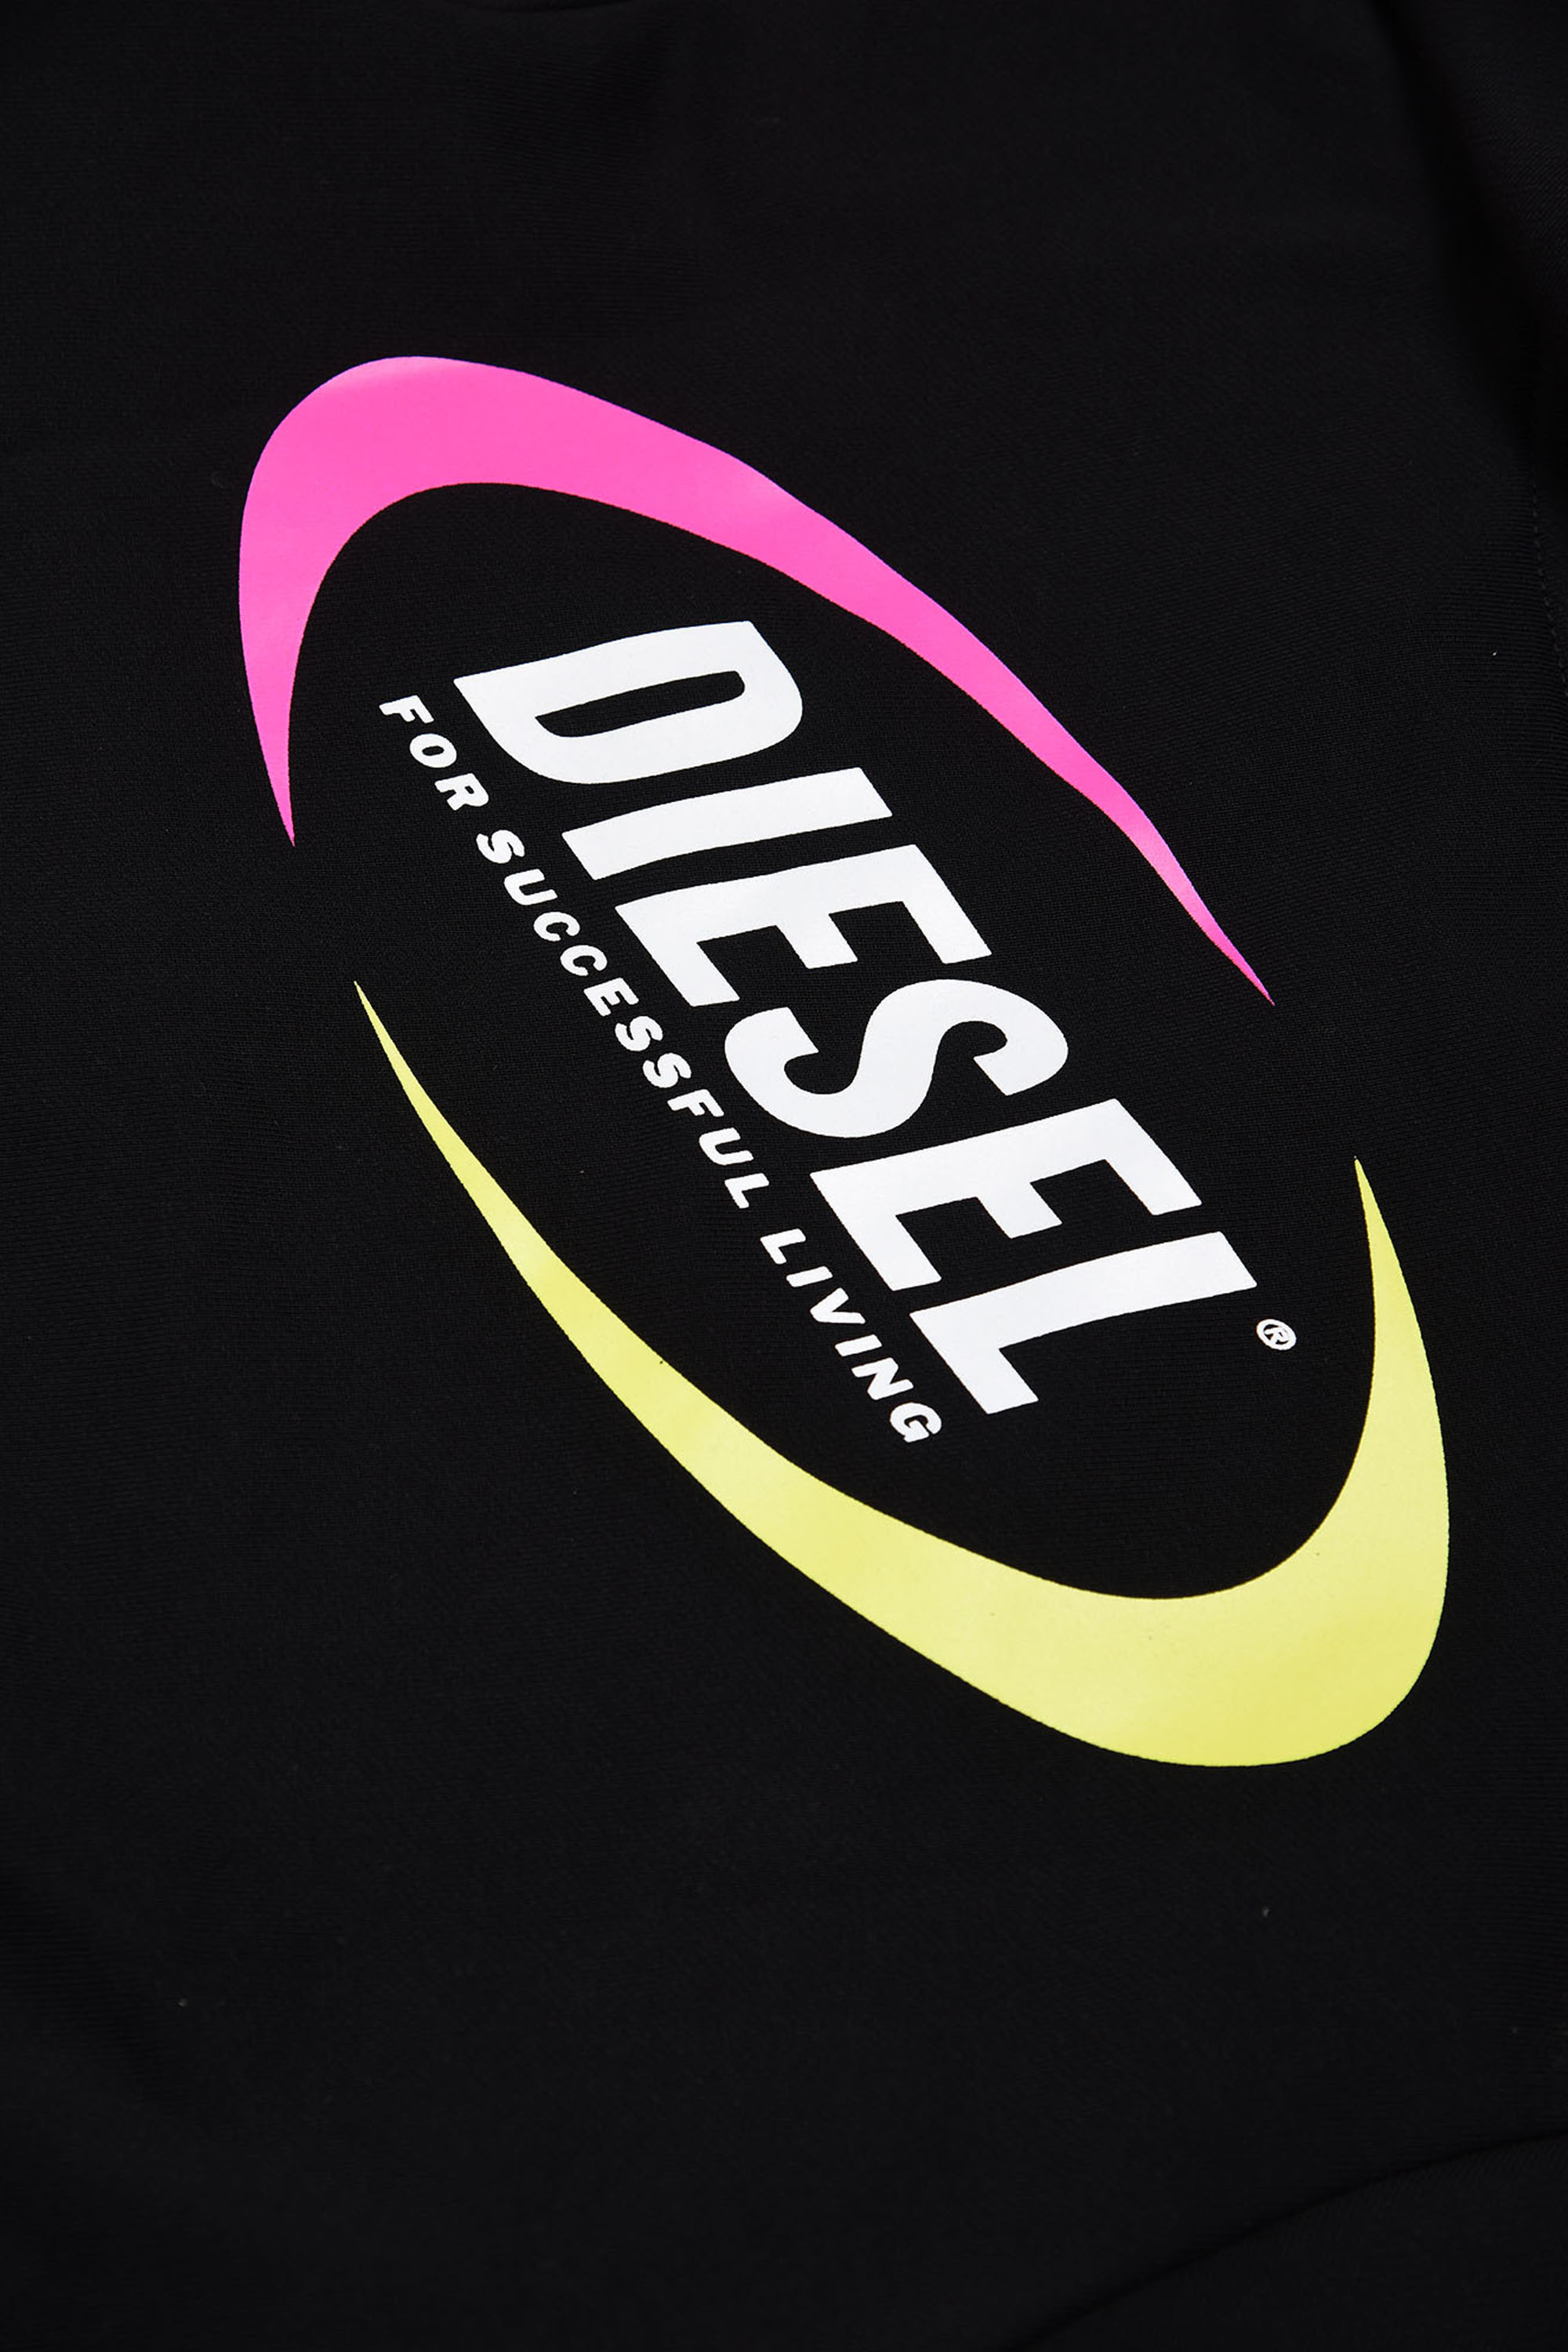 Diesel - MSULTELY, Black - Image 3